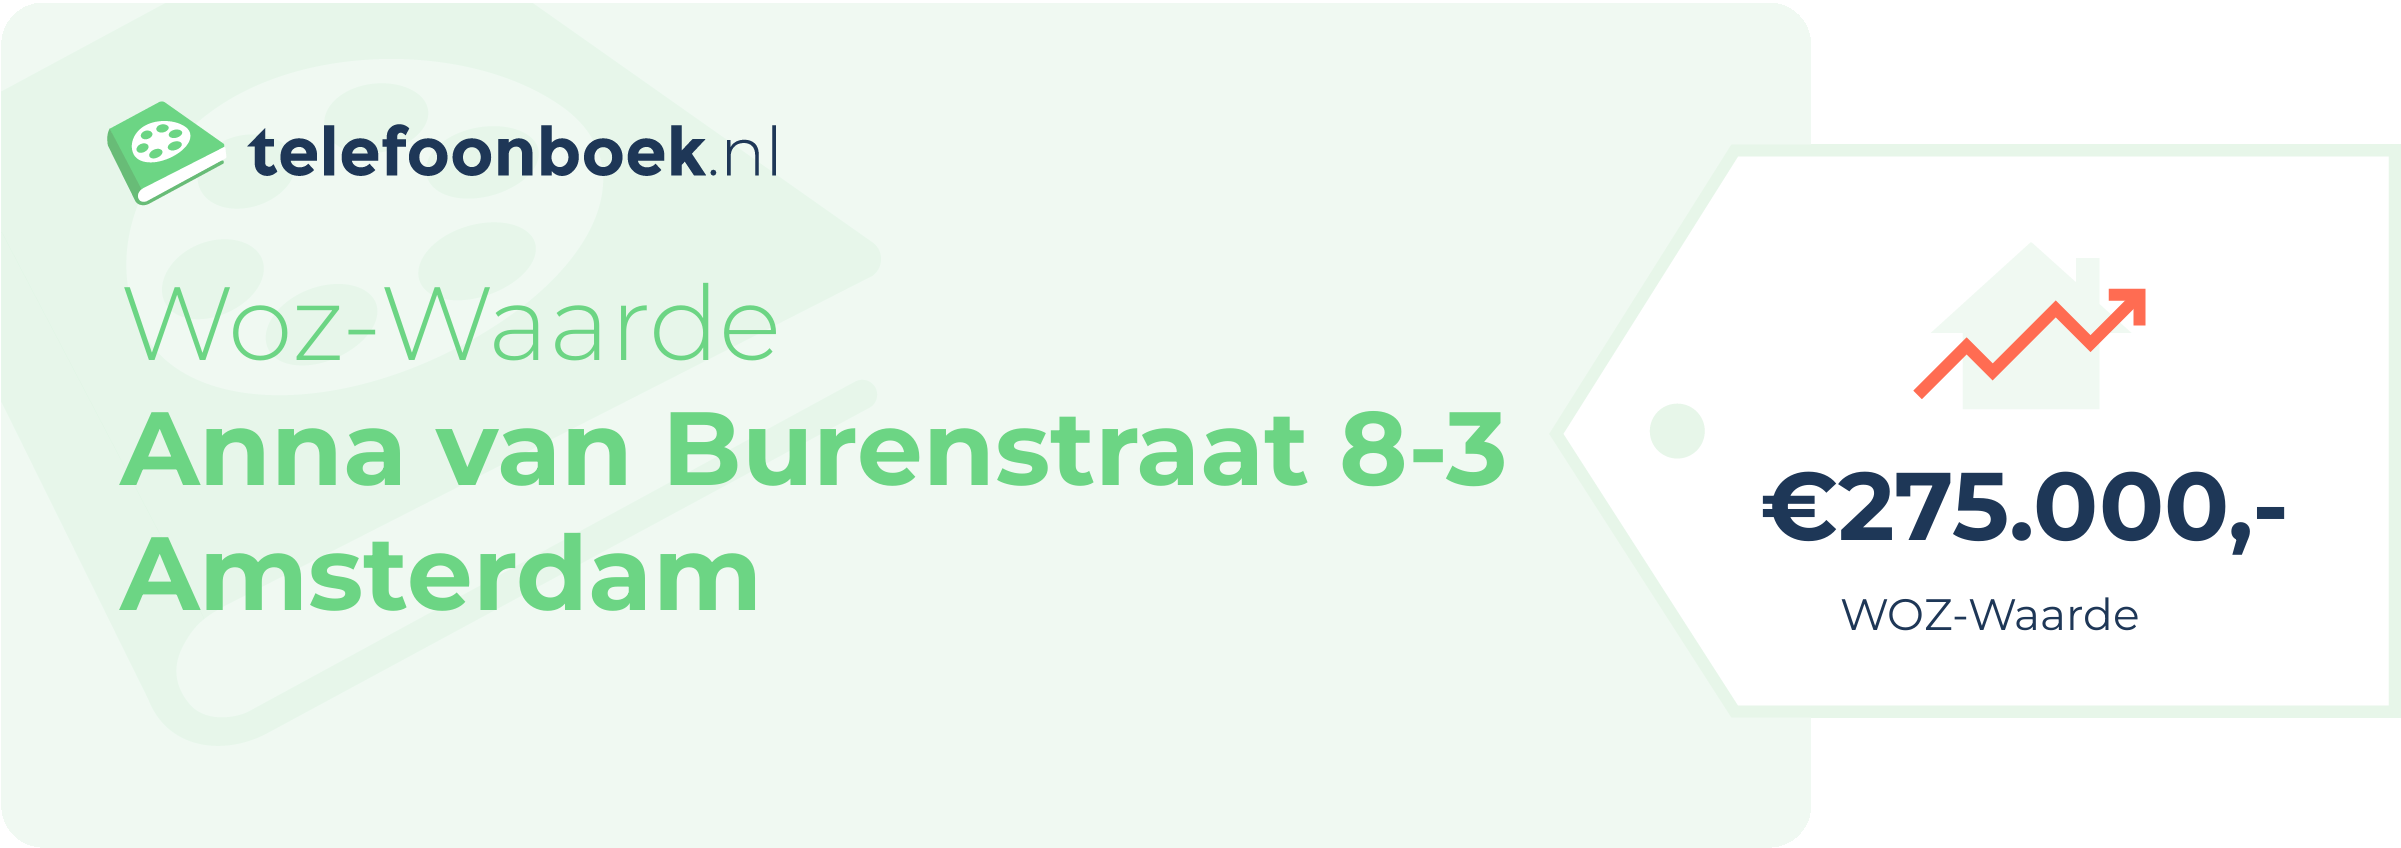 WOZ-waarde Anna Van Burenstraat 8-3 Amsterdam